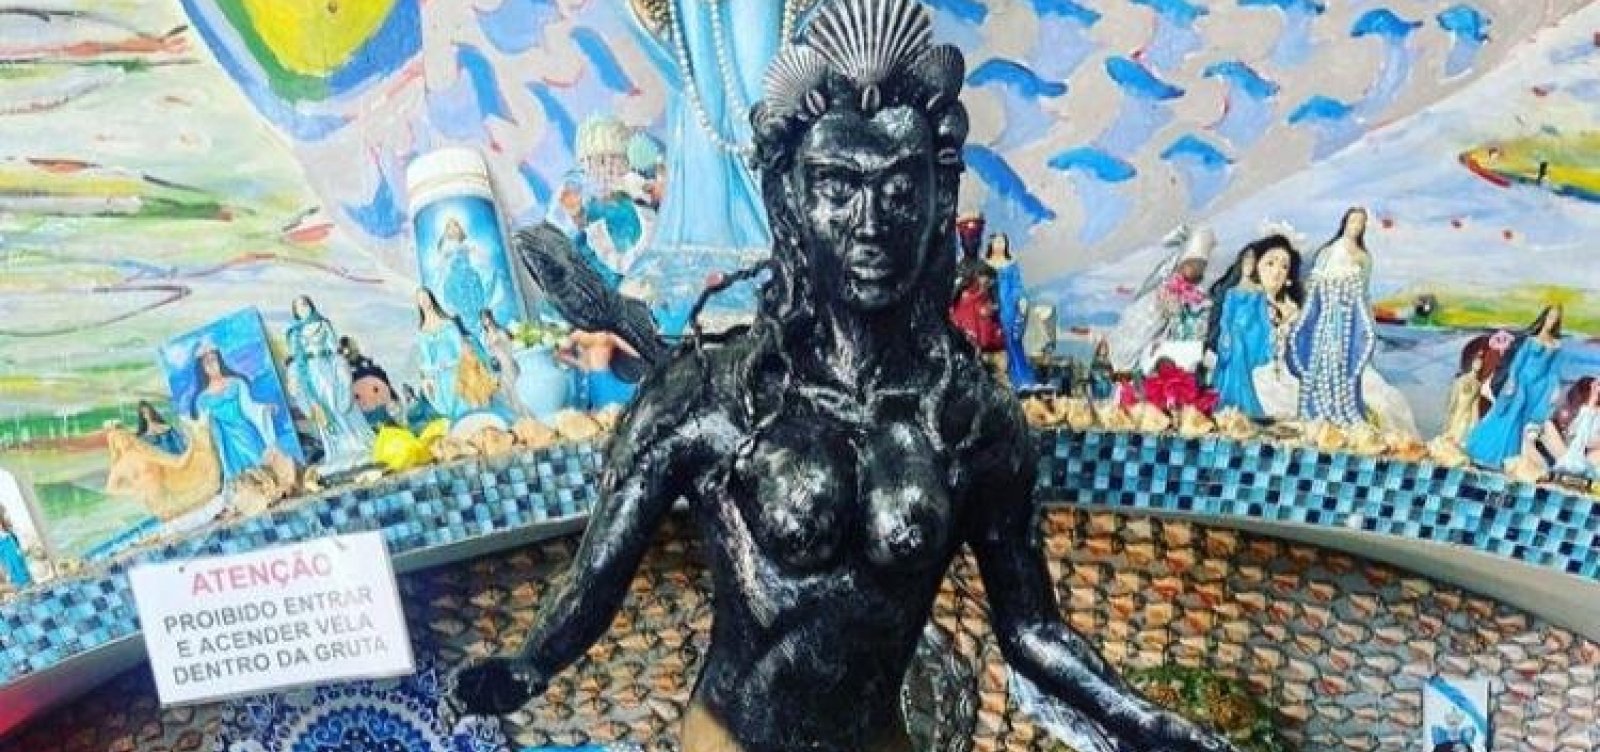 Pela primeira vez em 100 anos, Iemanjá é representada como mulher negra em estátua no Rio Vermelho